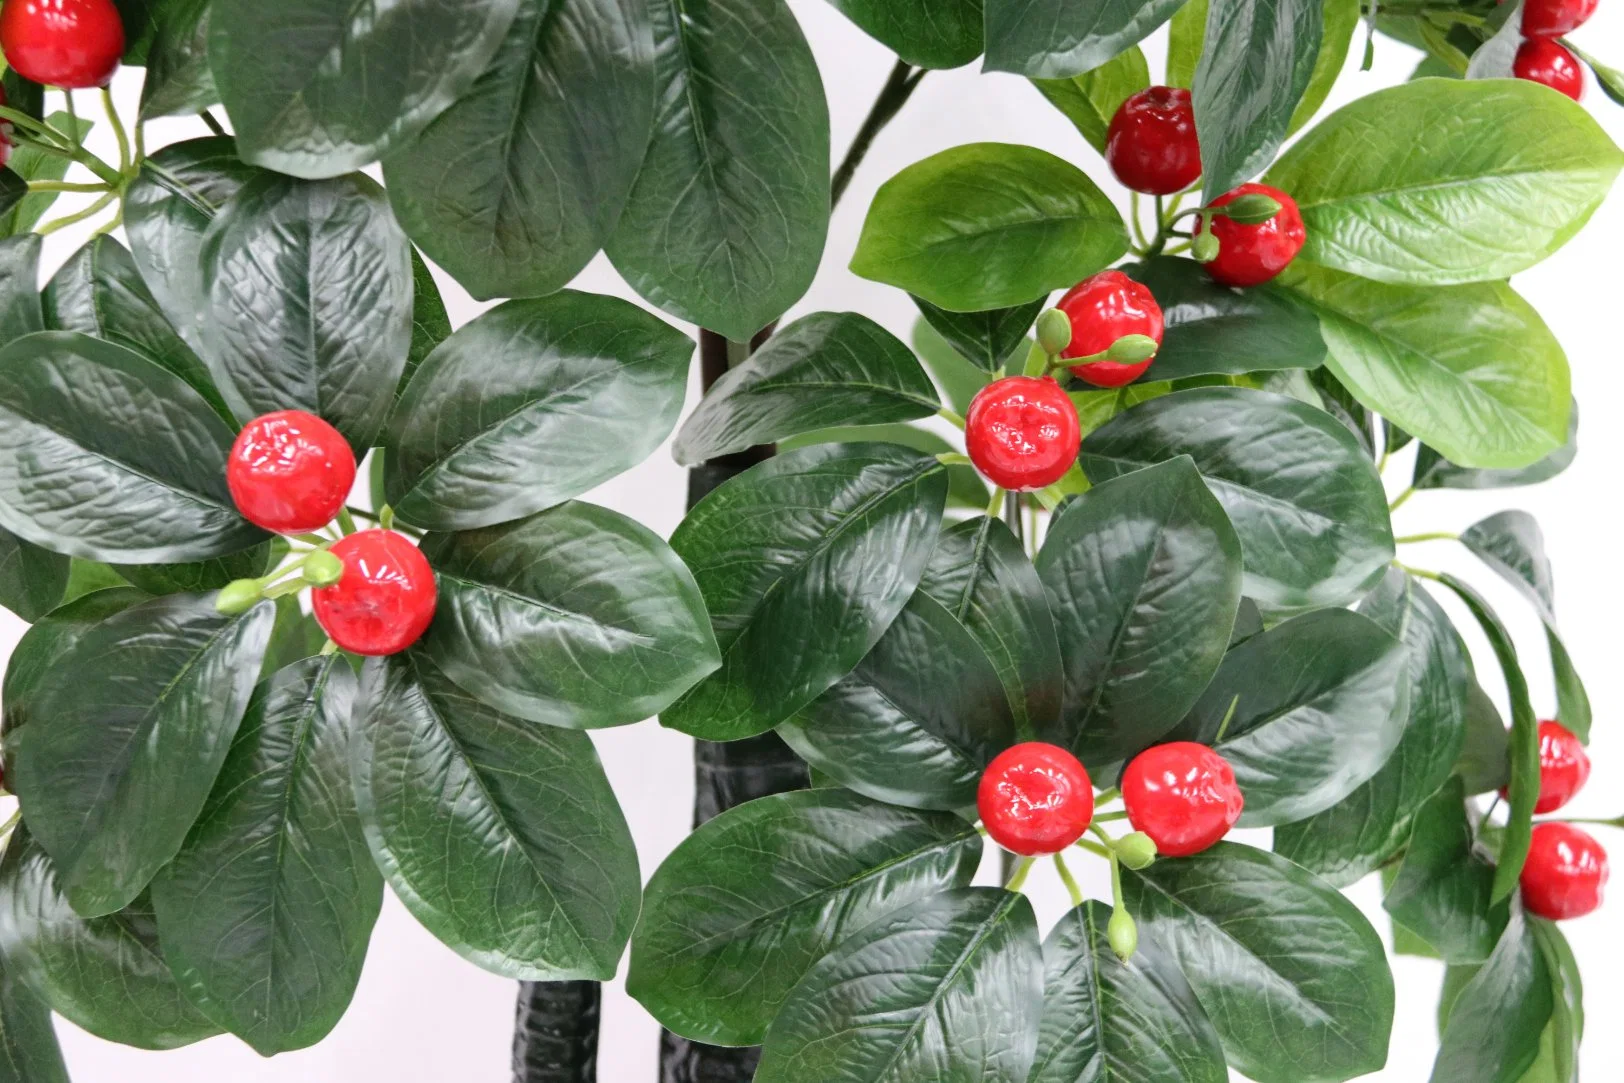 Cerca de la naturaleza 72 Double Dragon Cherry-Apple personalizable árbol planta decorativa de simulación Artificial árbol frutal